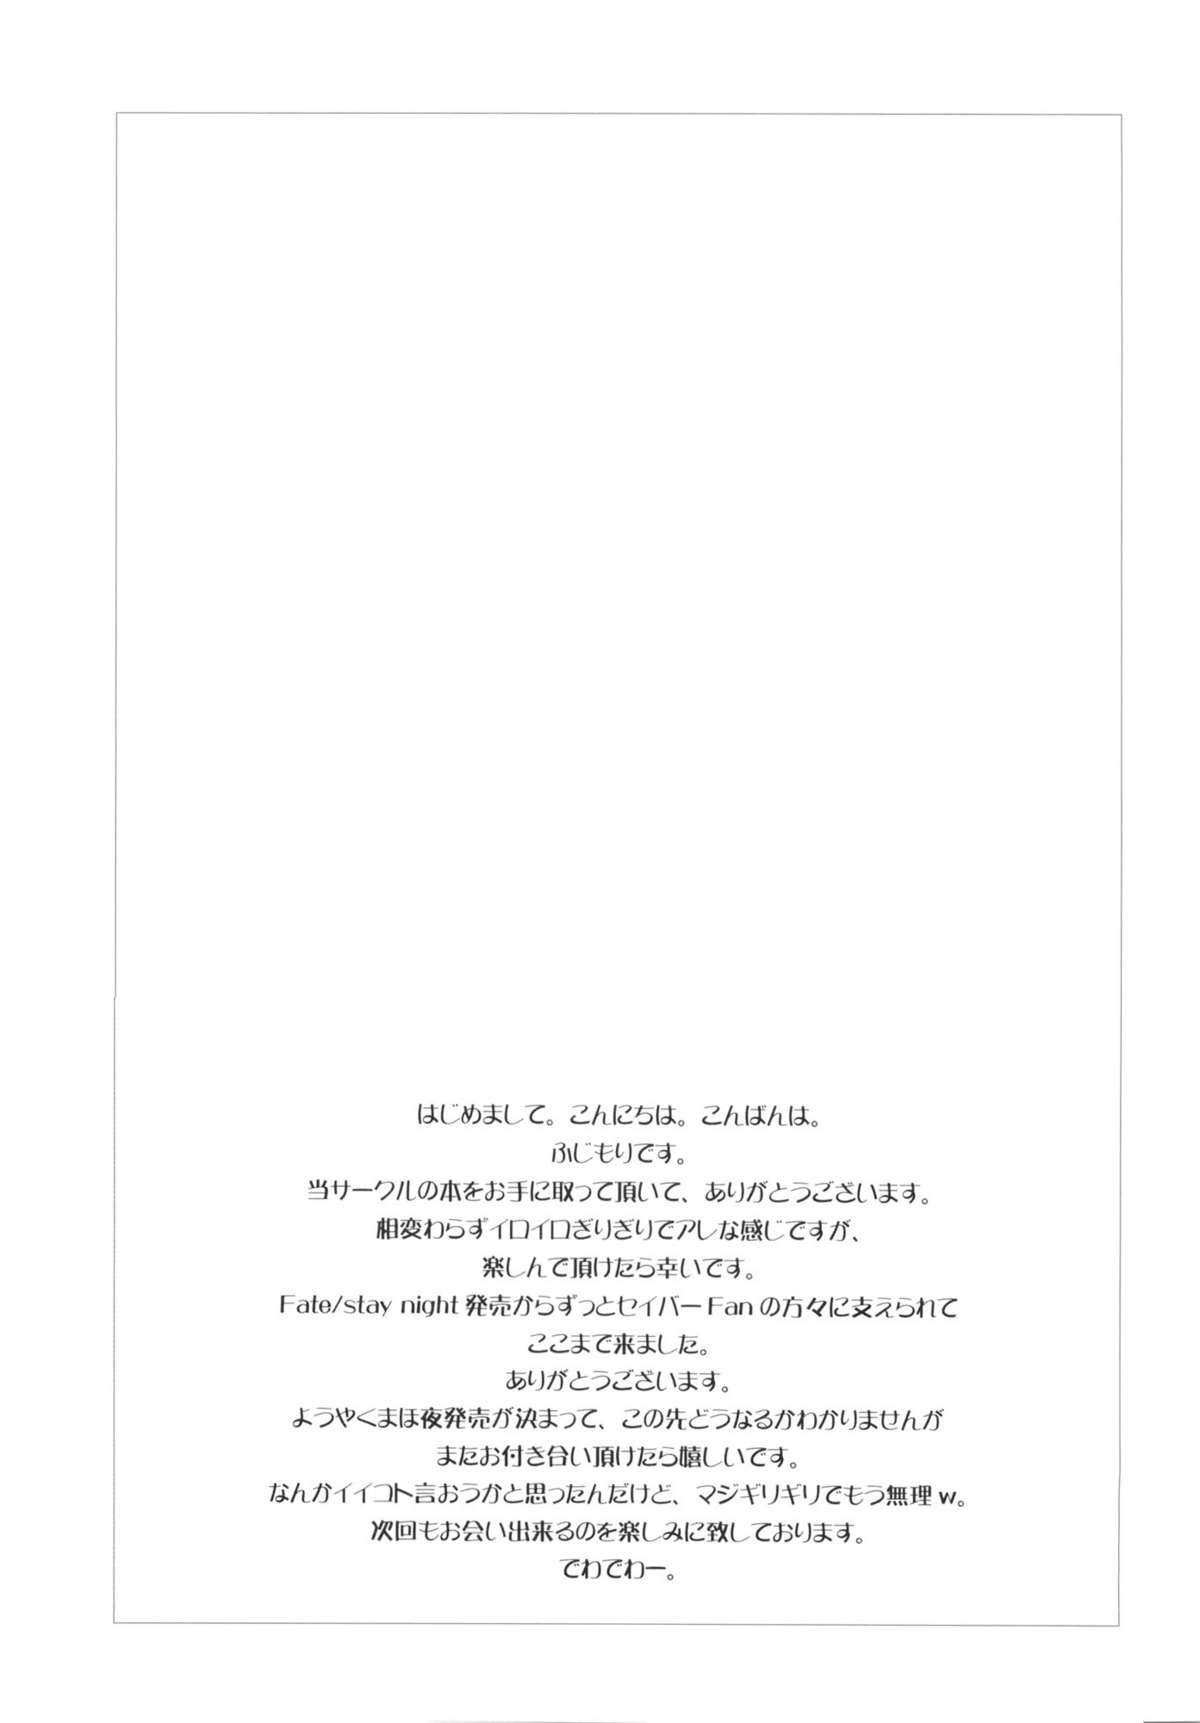 (C81) [Uotatsu18Kinshiten (Fujimori Saya)] Ookiku Nacchatta (Fate / stay night) (C81) [魚辰一八金支店 (ふじもり沙耶)] おおきくなっちゃった (Fate / stay night)